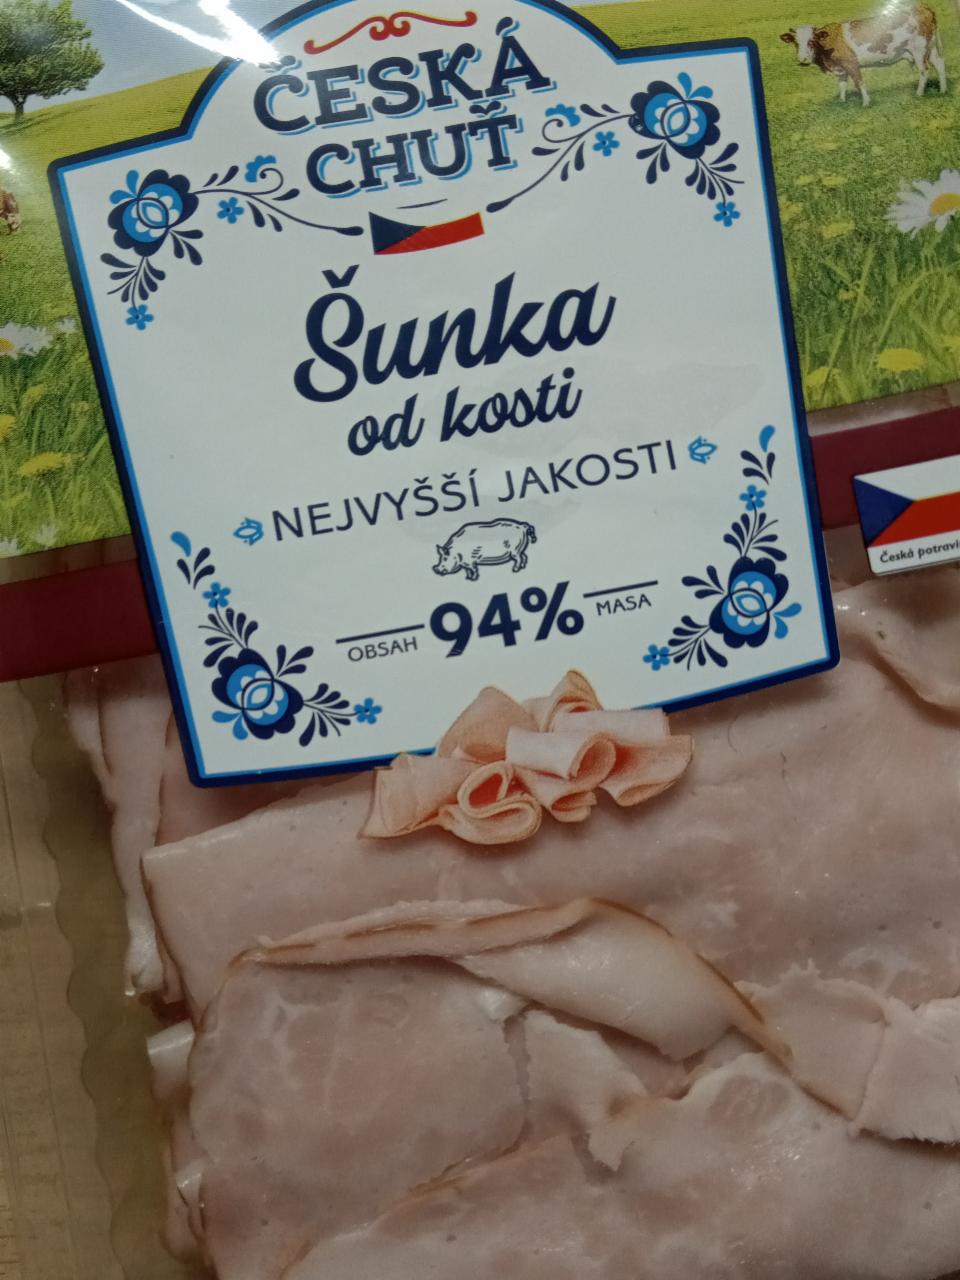 Fotografie - Šunka od kosti nejvyšší jakosti 94% masa Česká chuť